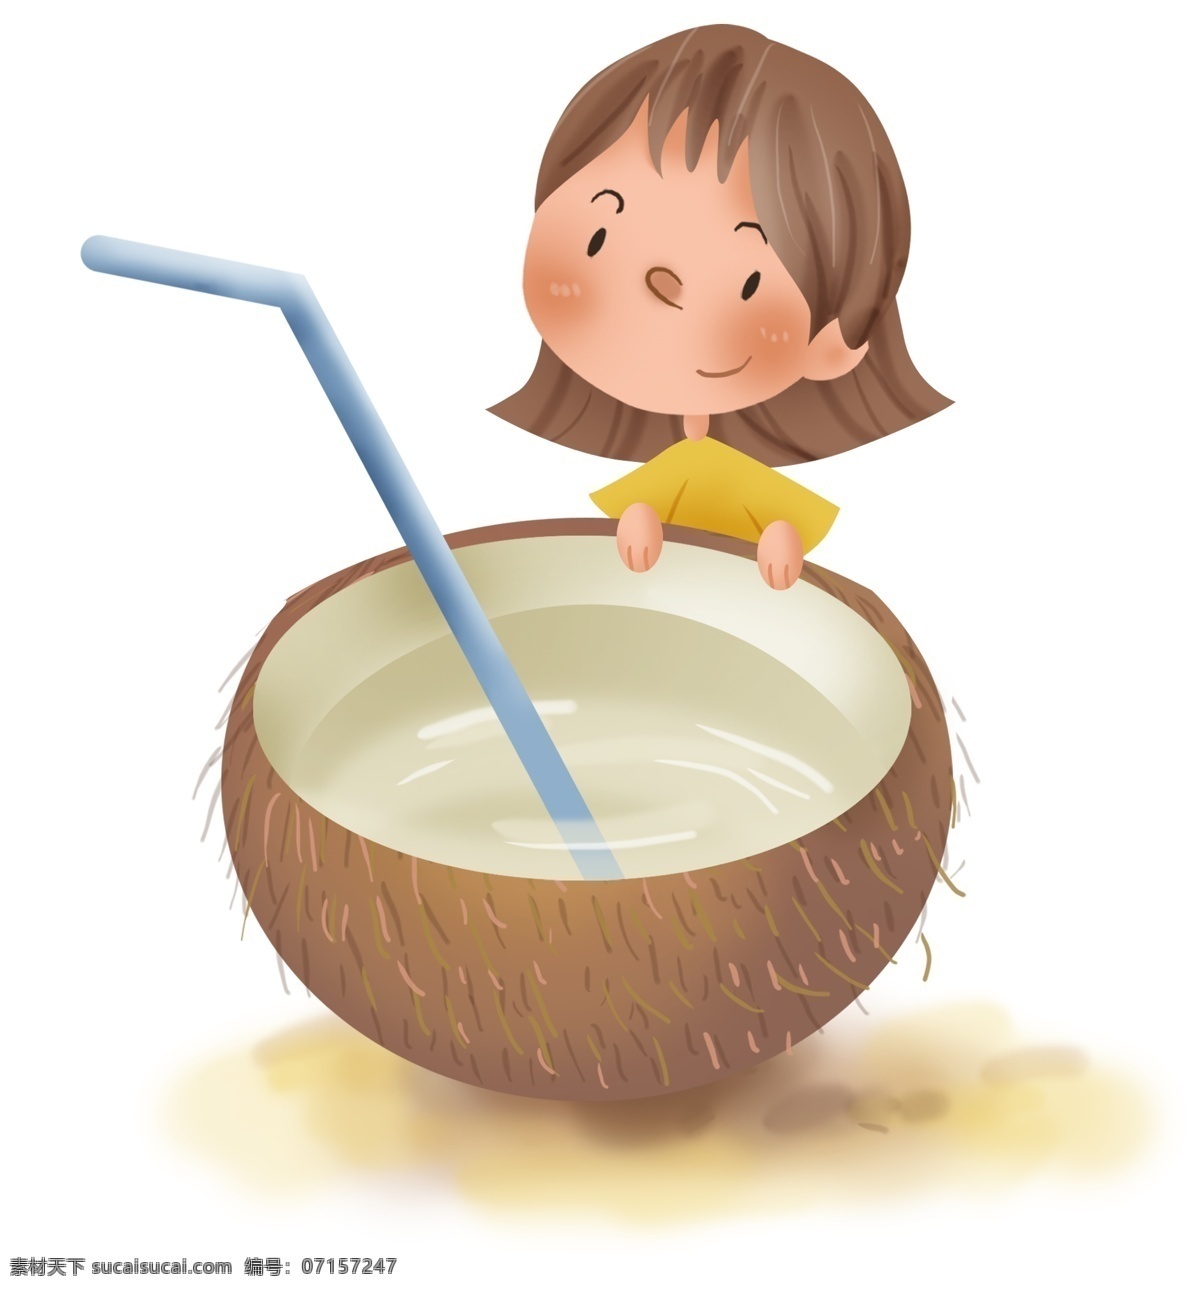 夏季 解暑 椰子汁 儿童 解暑水果 小暑 入夏 大暑 炎热 幼儿园 椰子 吃椰子